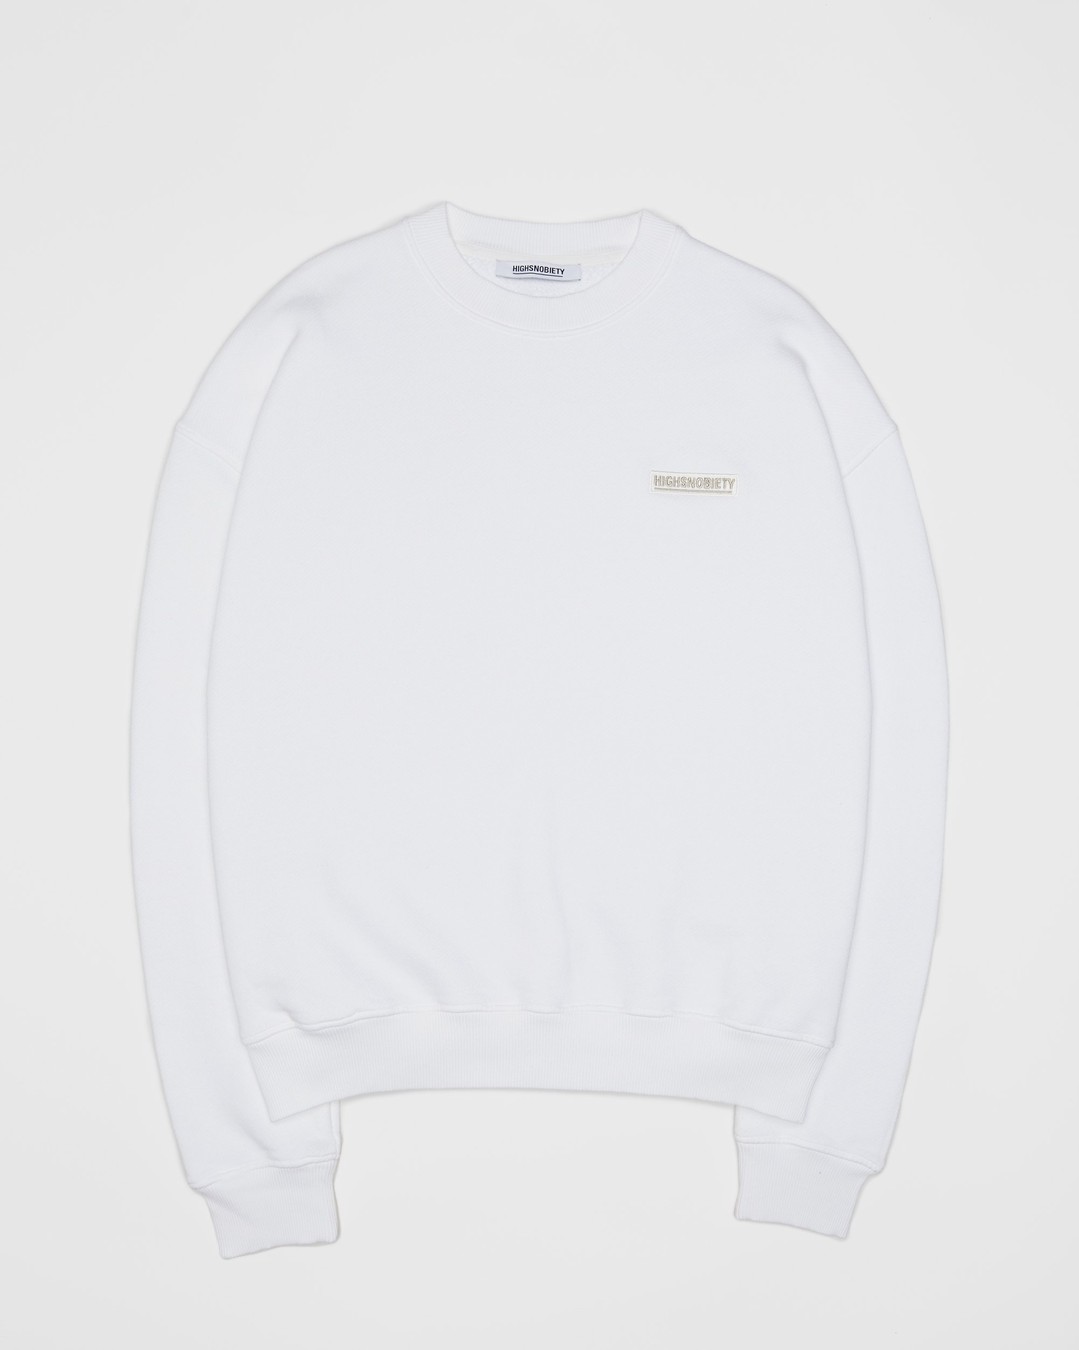 Highsnobiety – Staples Sweatshirt White - Sweats - White - Image 1